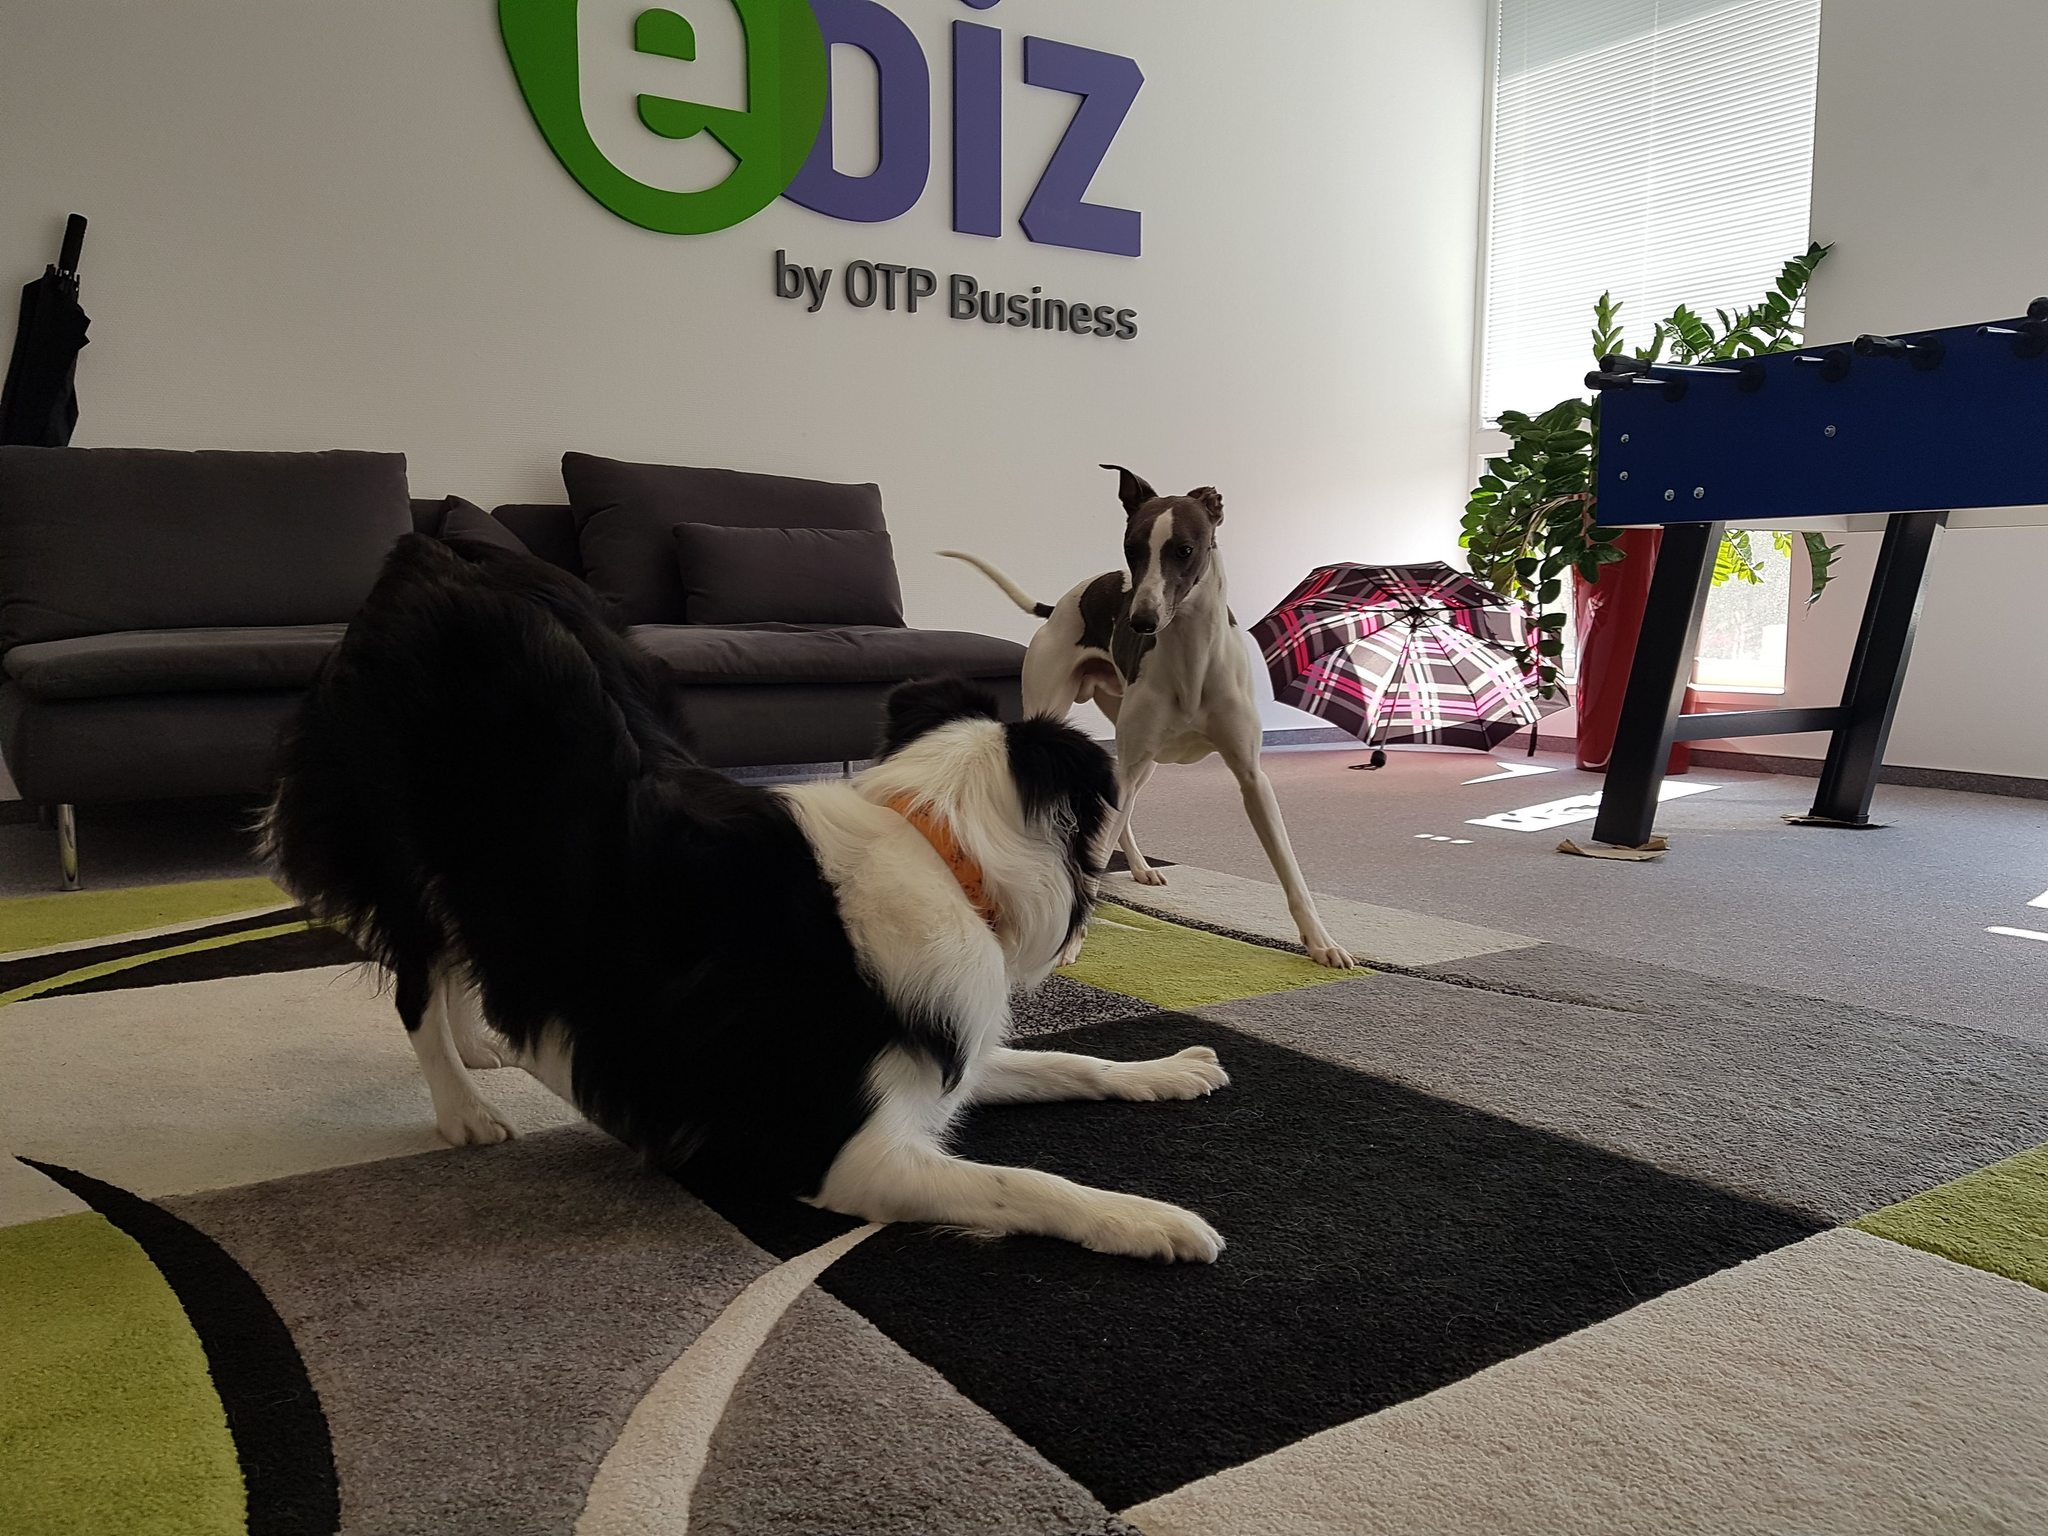 Kutyabarát munkahely - az OTP eBIZ irodájában a kutyák is jól érzik magukat